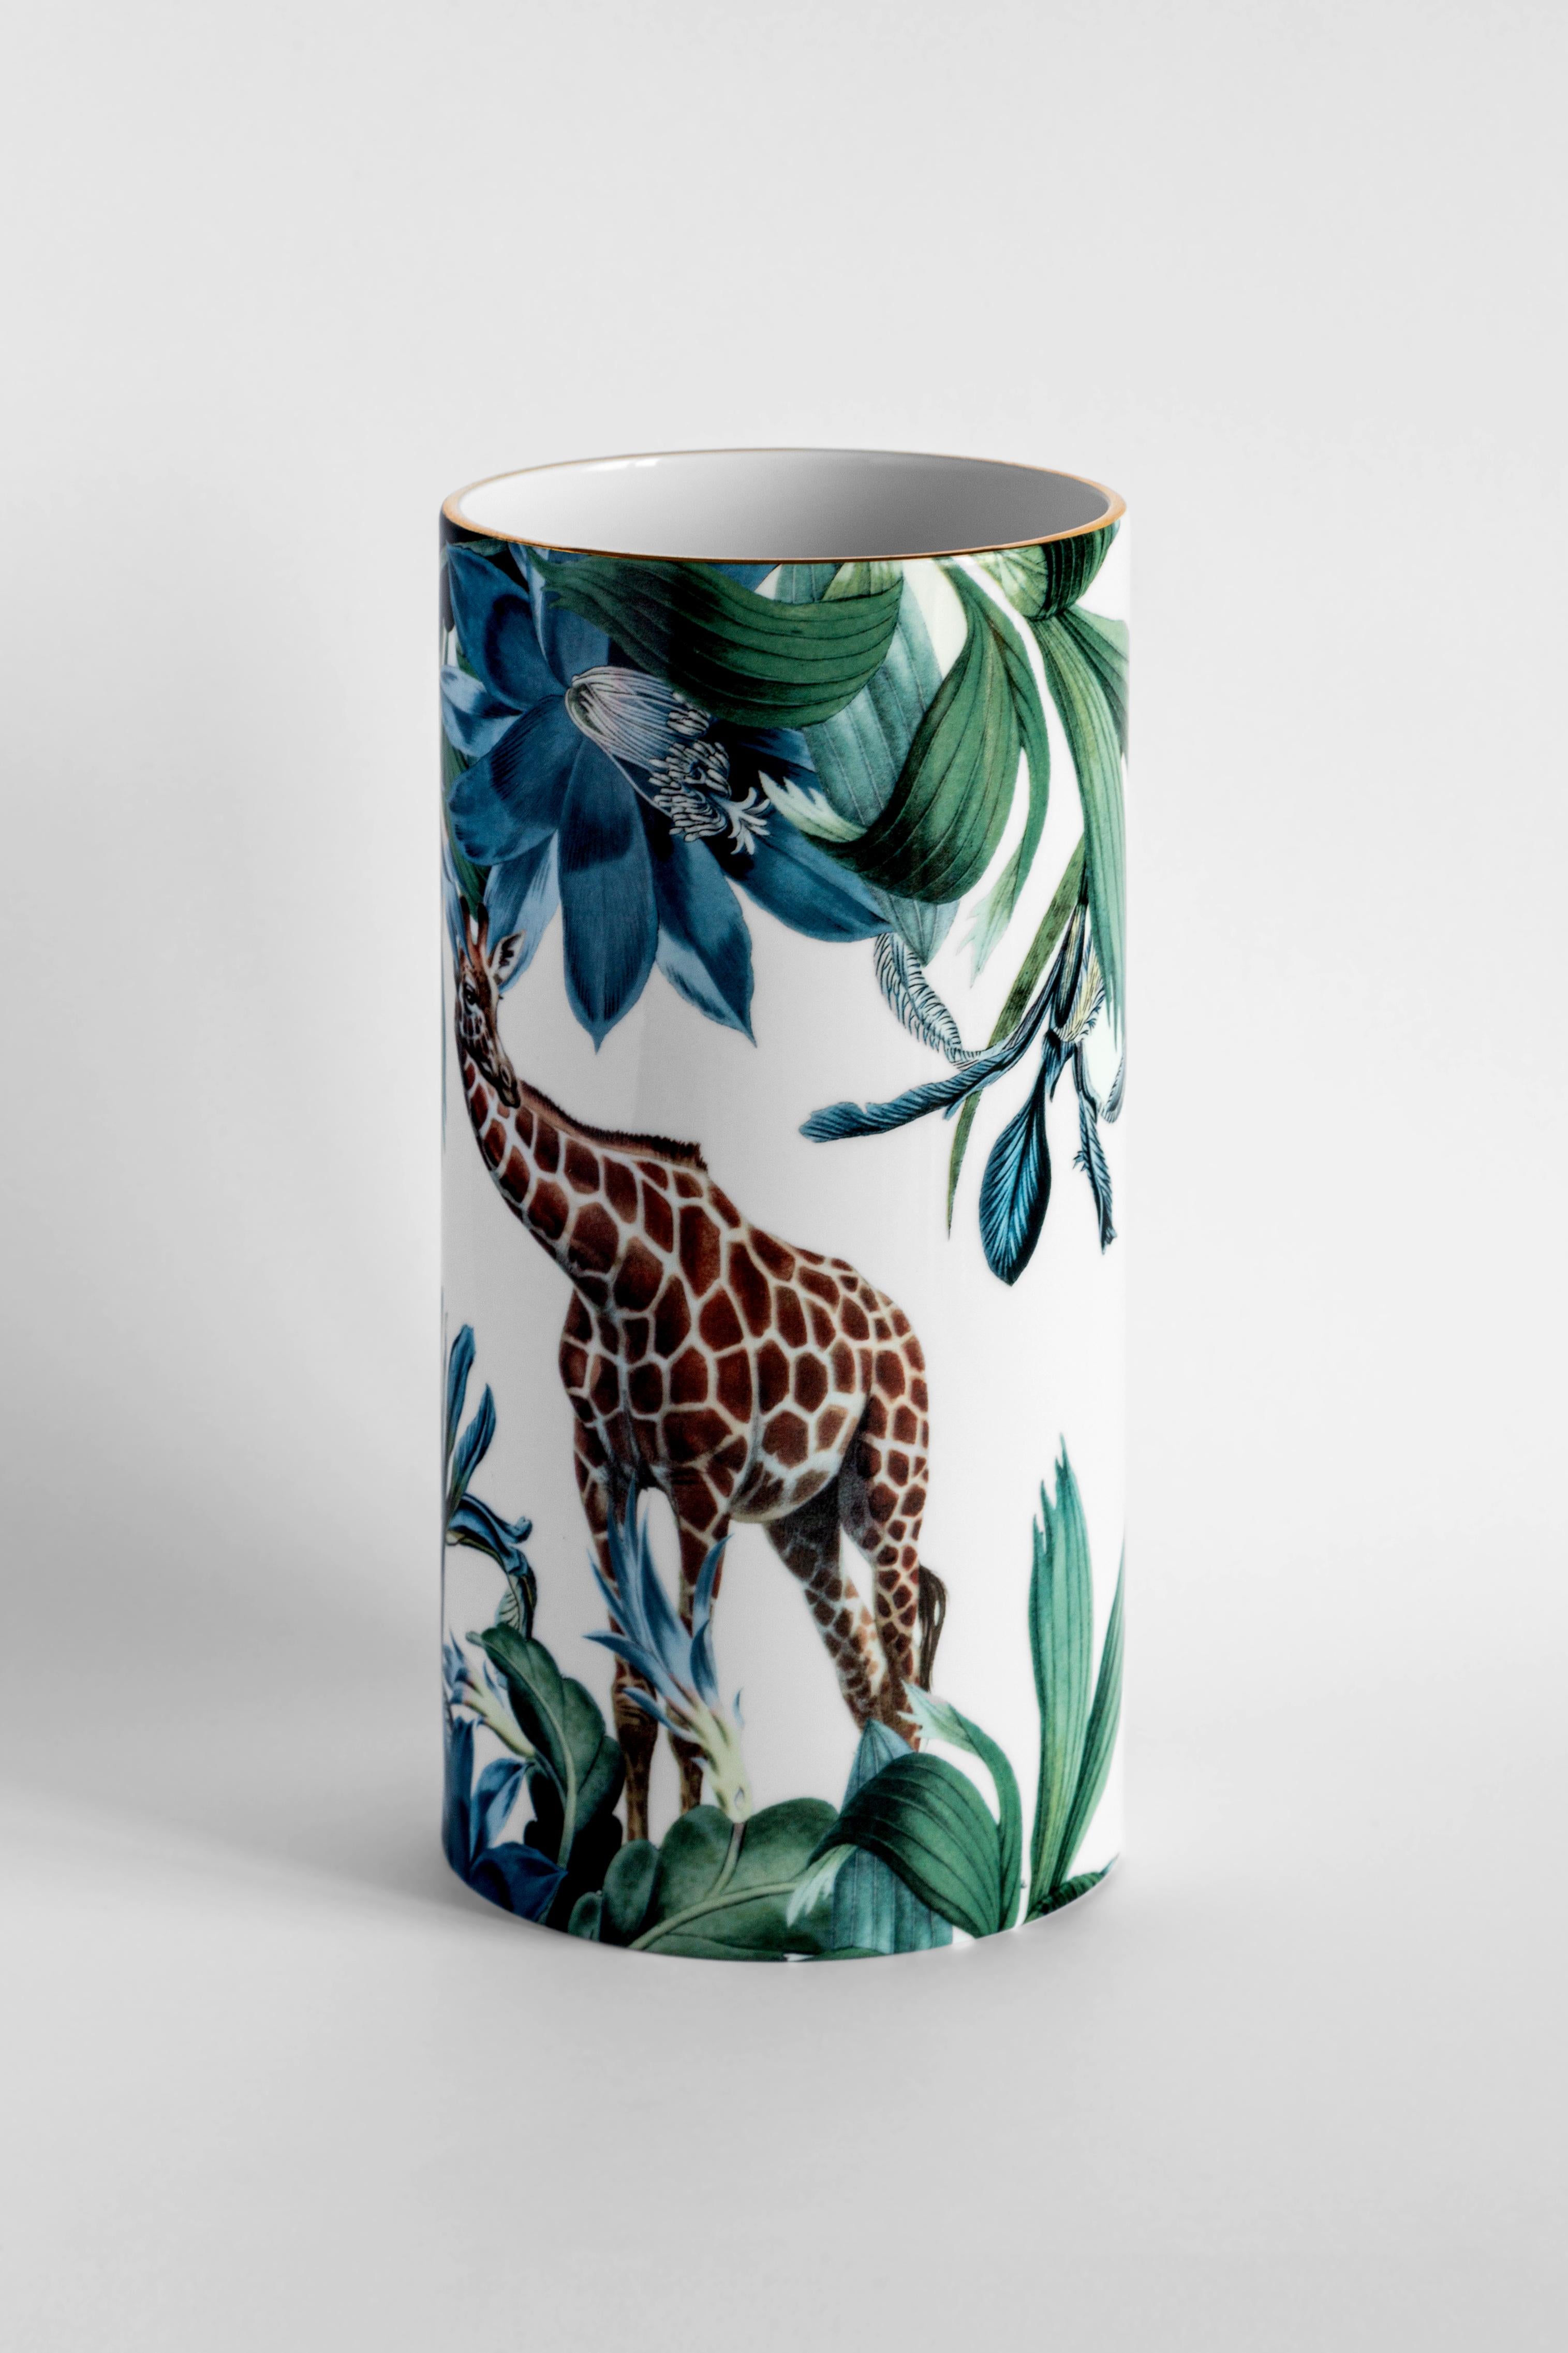 Présentant une superbe girafe africaine, ce vase fait partie de l'hommage Animalia de Vito Nesta dans sa collection Grand Tour. Combinant l'orange brûlé, les verts luxuriants et les bleus, les riches détails de l'animal et des plantes créent un